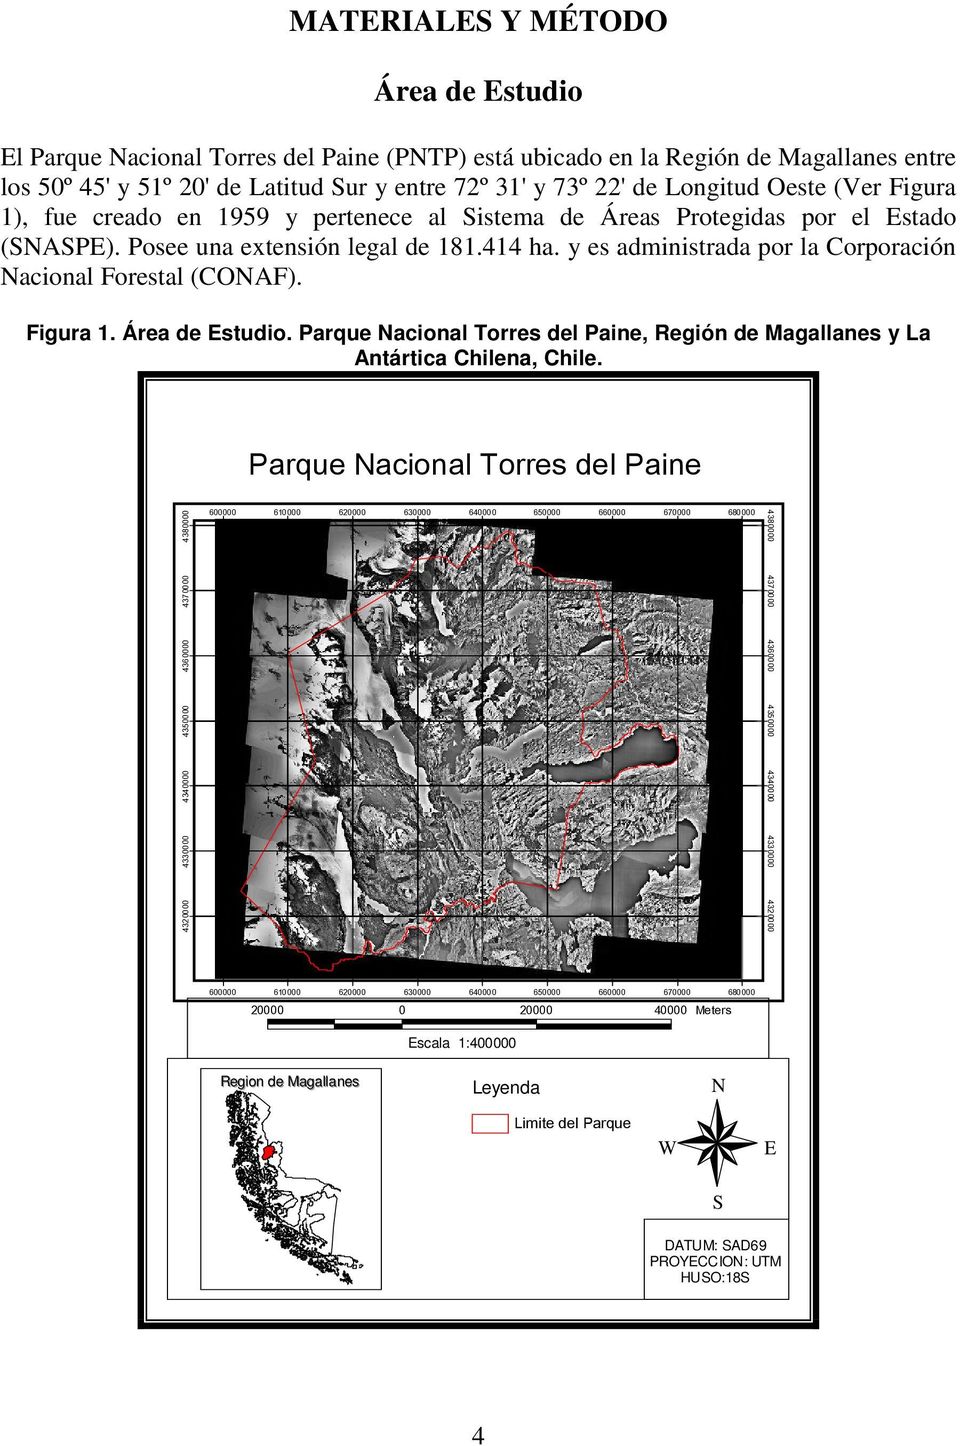 y es administrada por la Corporación Nacional Forestal (CONAF). Figura 1. Área de Estudio. Parque Nacional Torres del Paine, Región de Magallanes y La Antártica Chilena, Chile.